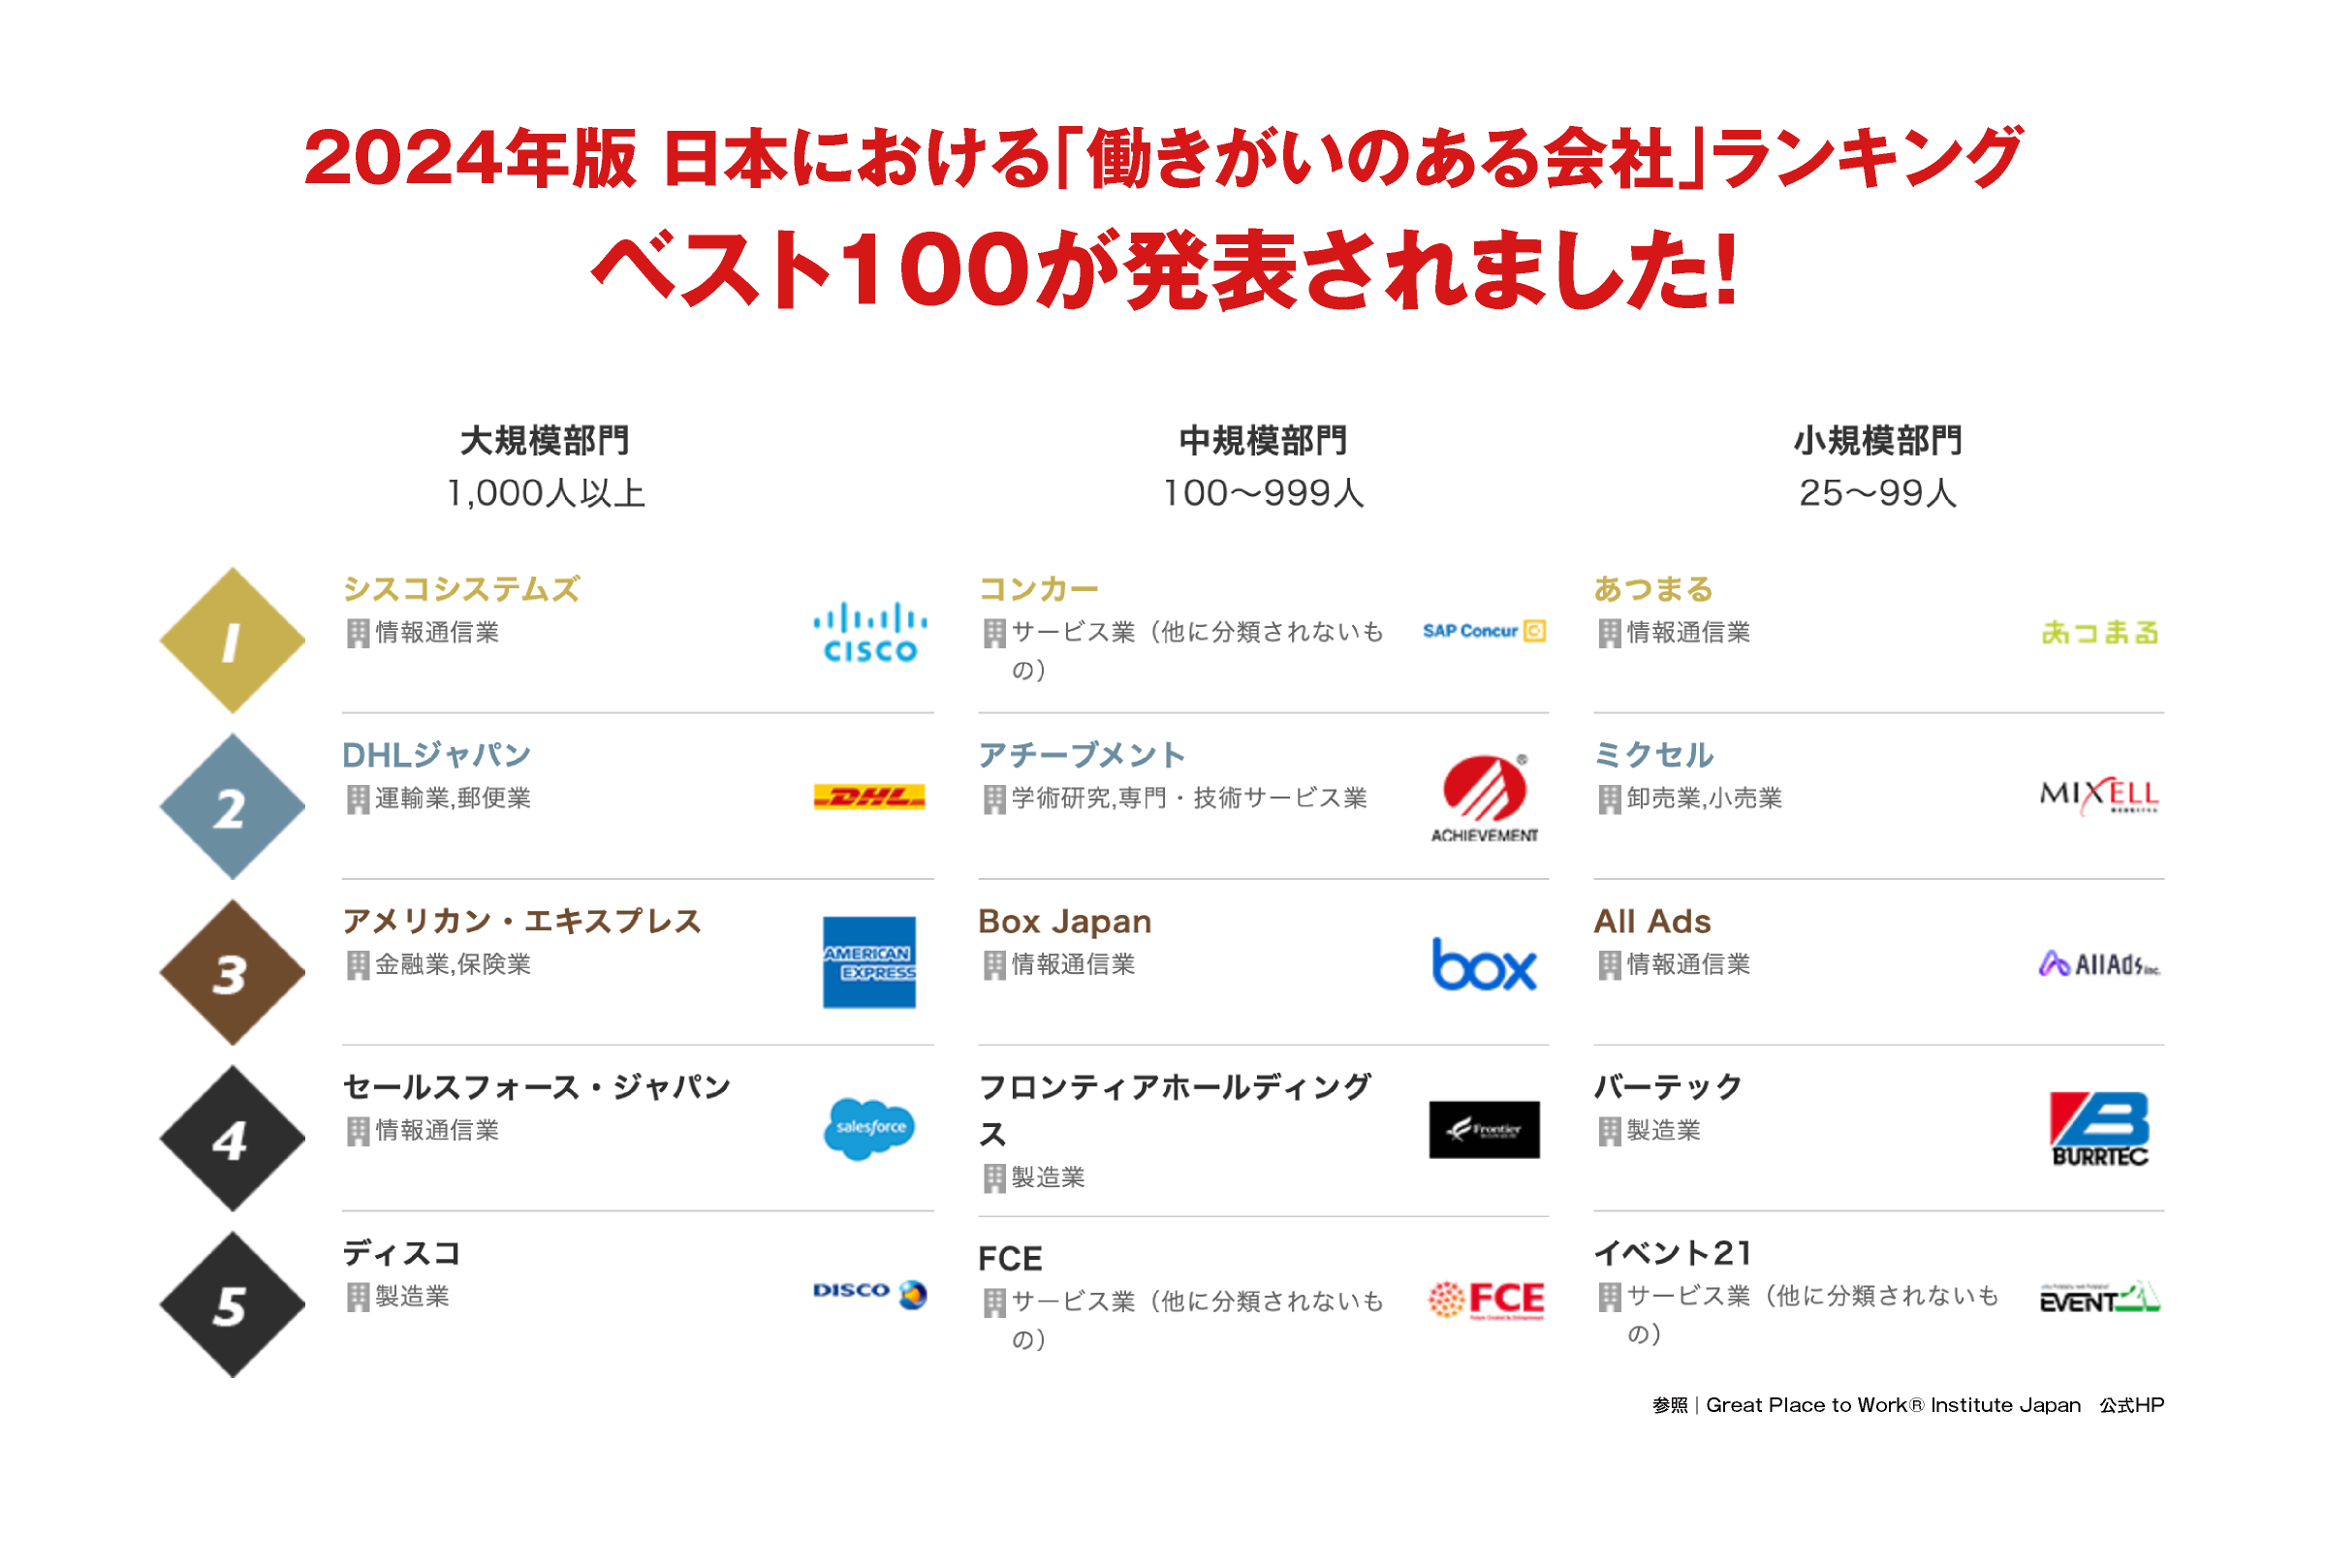 2023年版 日本における「働きがいのある会社」ランキングベスト100が発表されました！